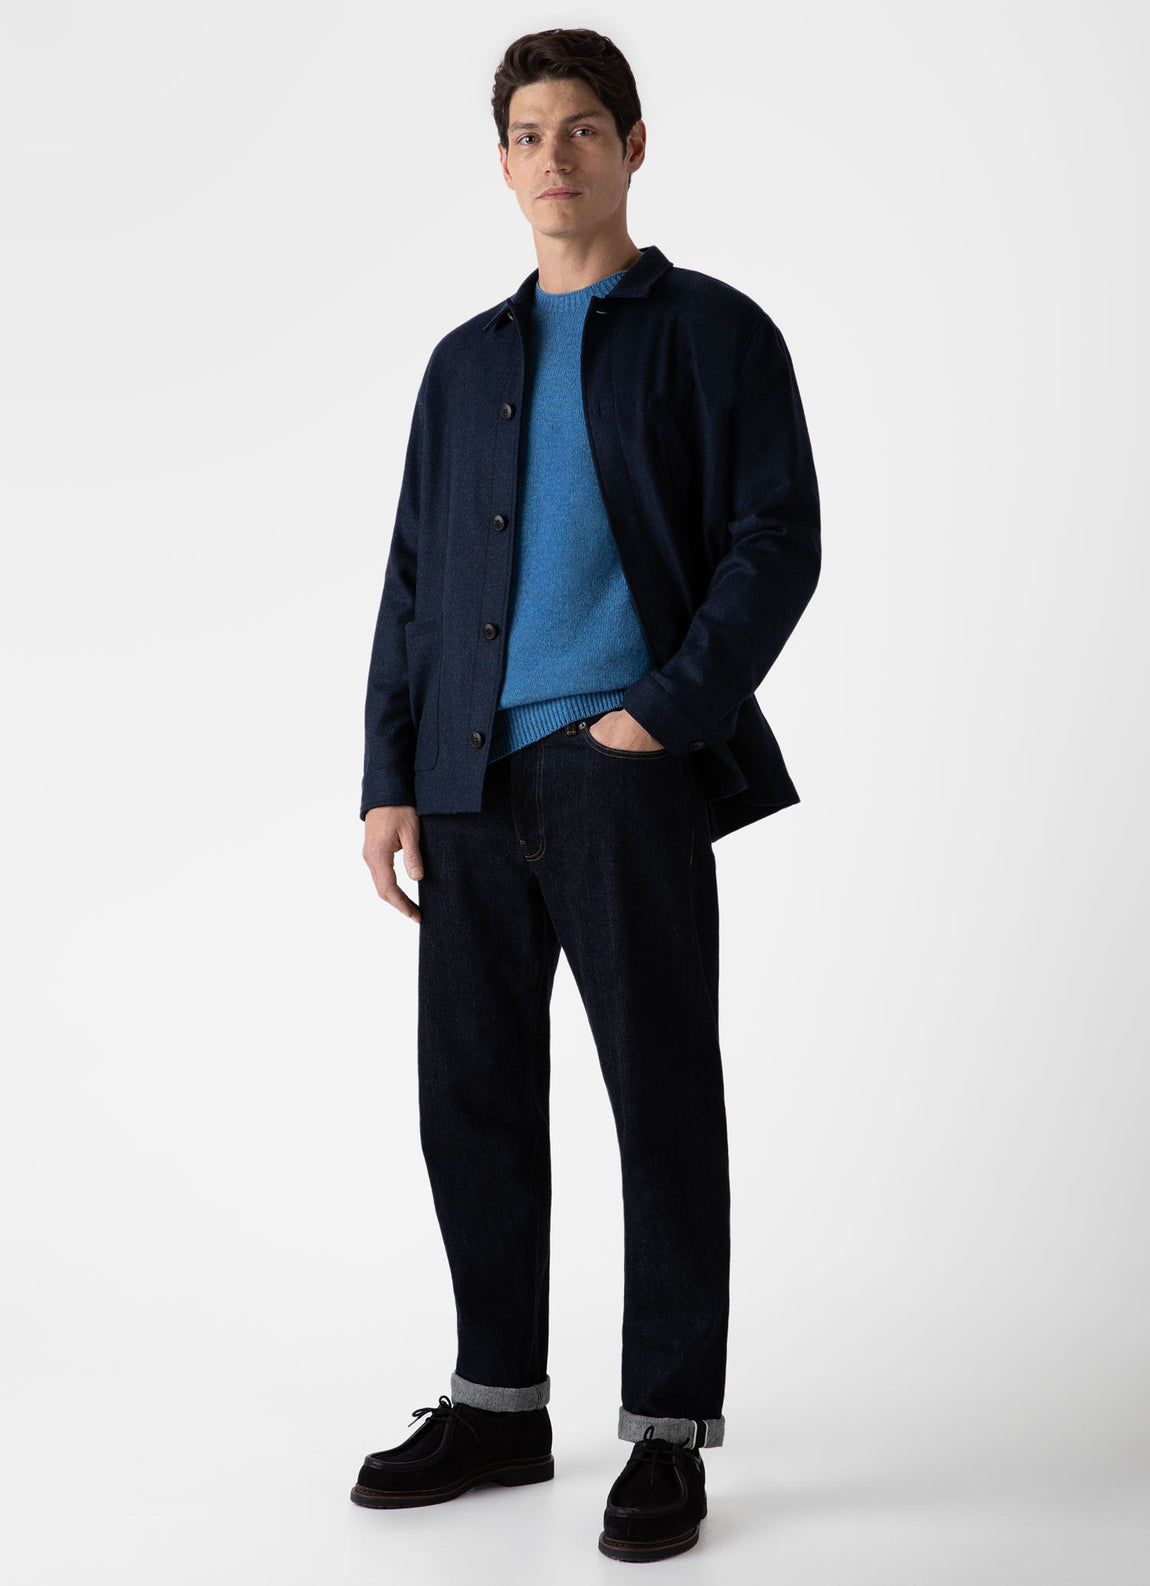 Men's Wool Twin Pocket Jacket in Light Navy Melange | Sunspel